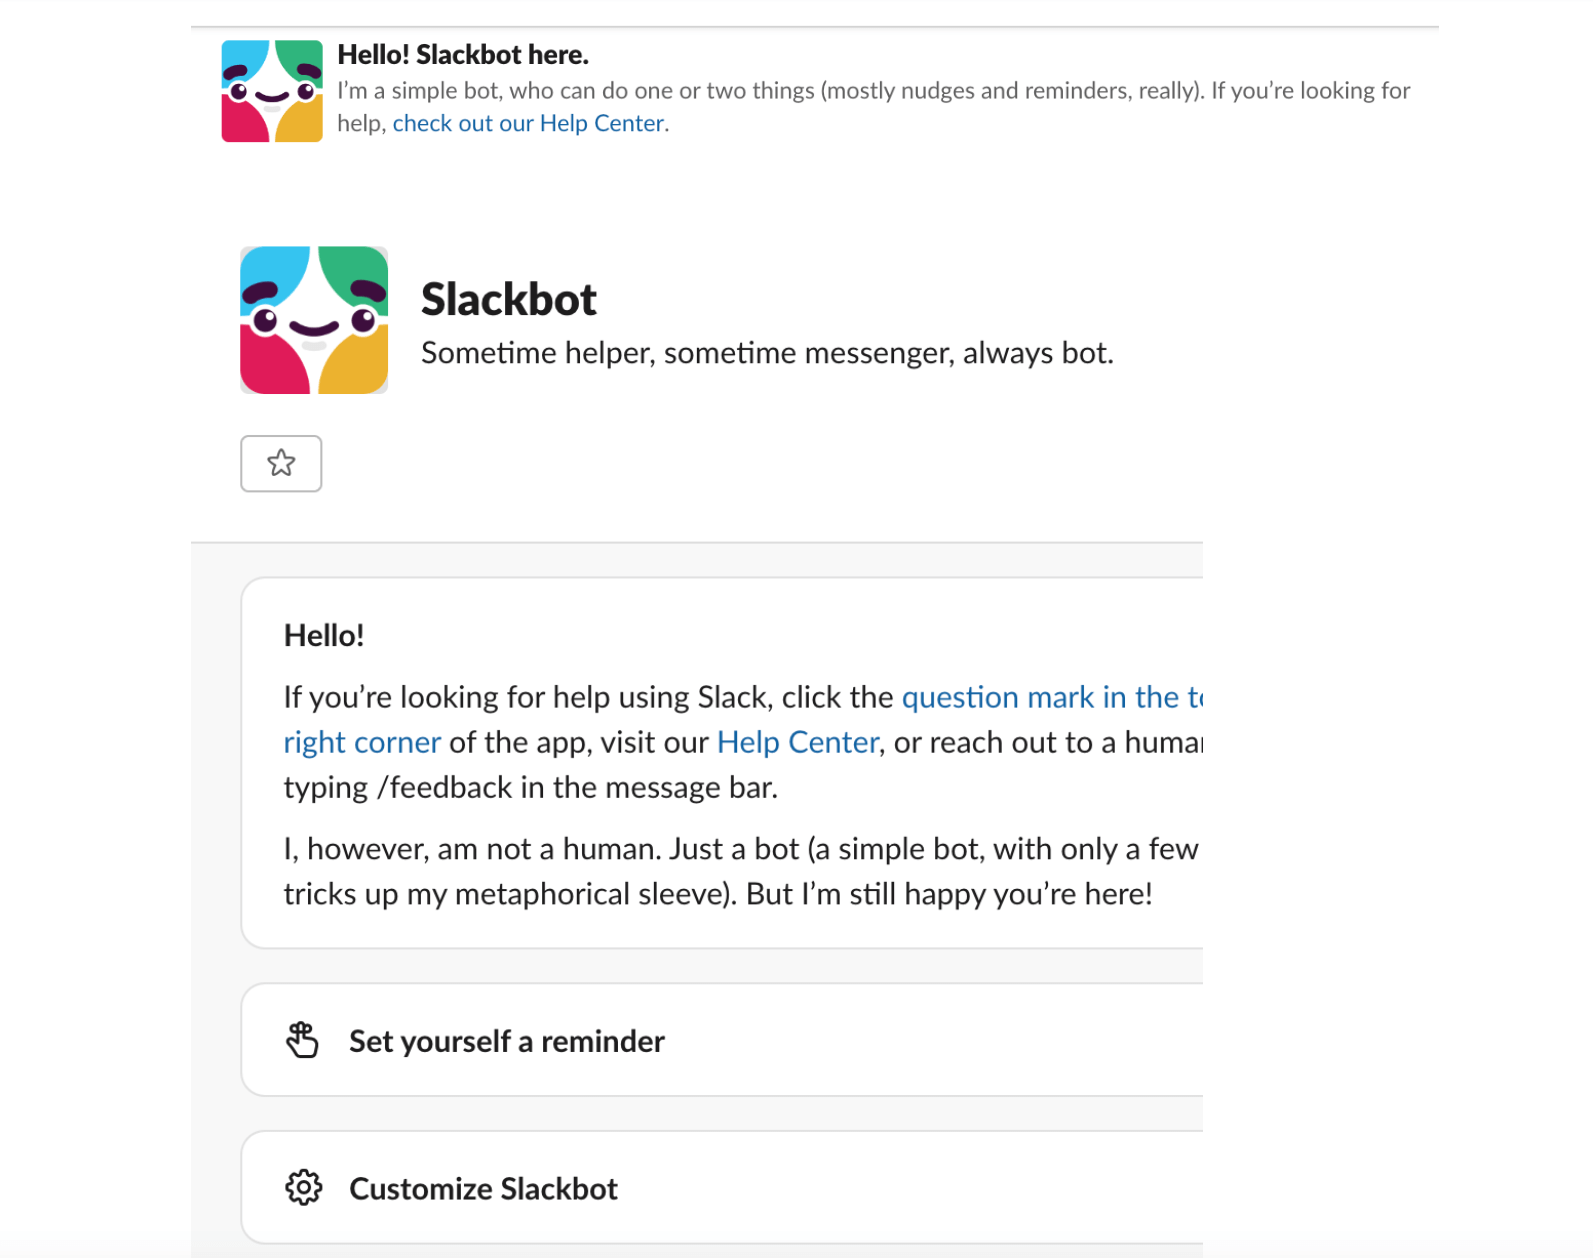 Slackbot Content Design